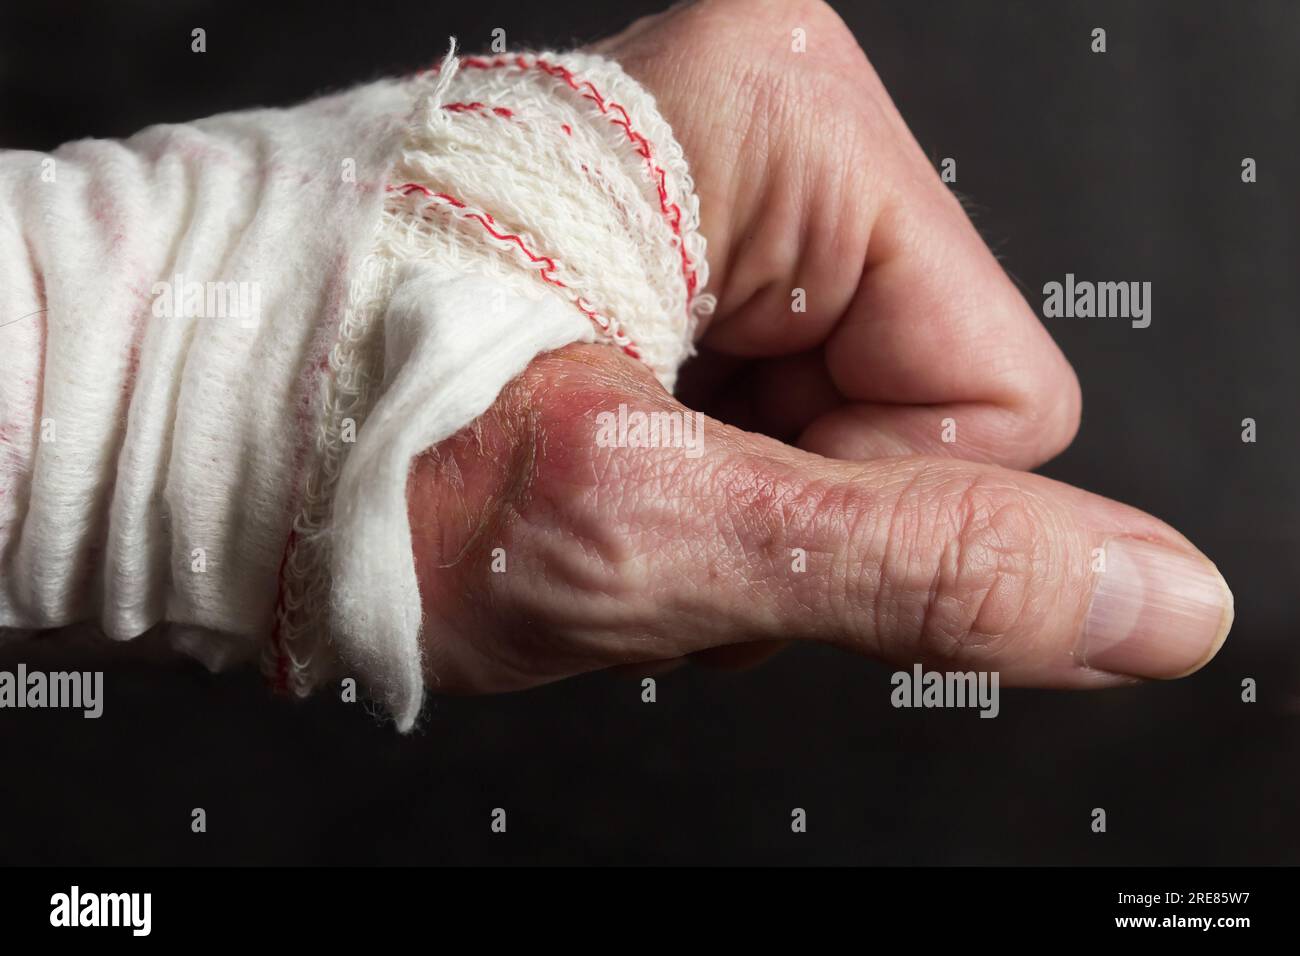 Primo piano di una mano bendata che mostra i resti di una ustione di secondo grado sulla nuca del pollice e le conseguenze di una lesione da ustione su un ba nero Foto Stock